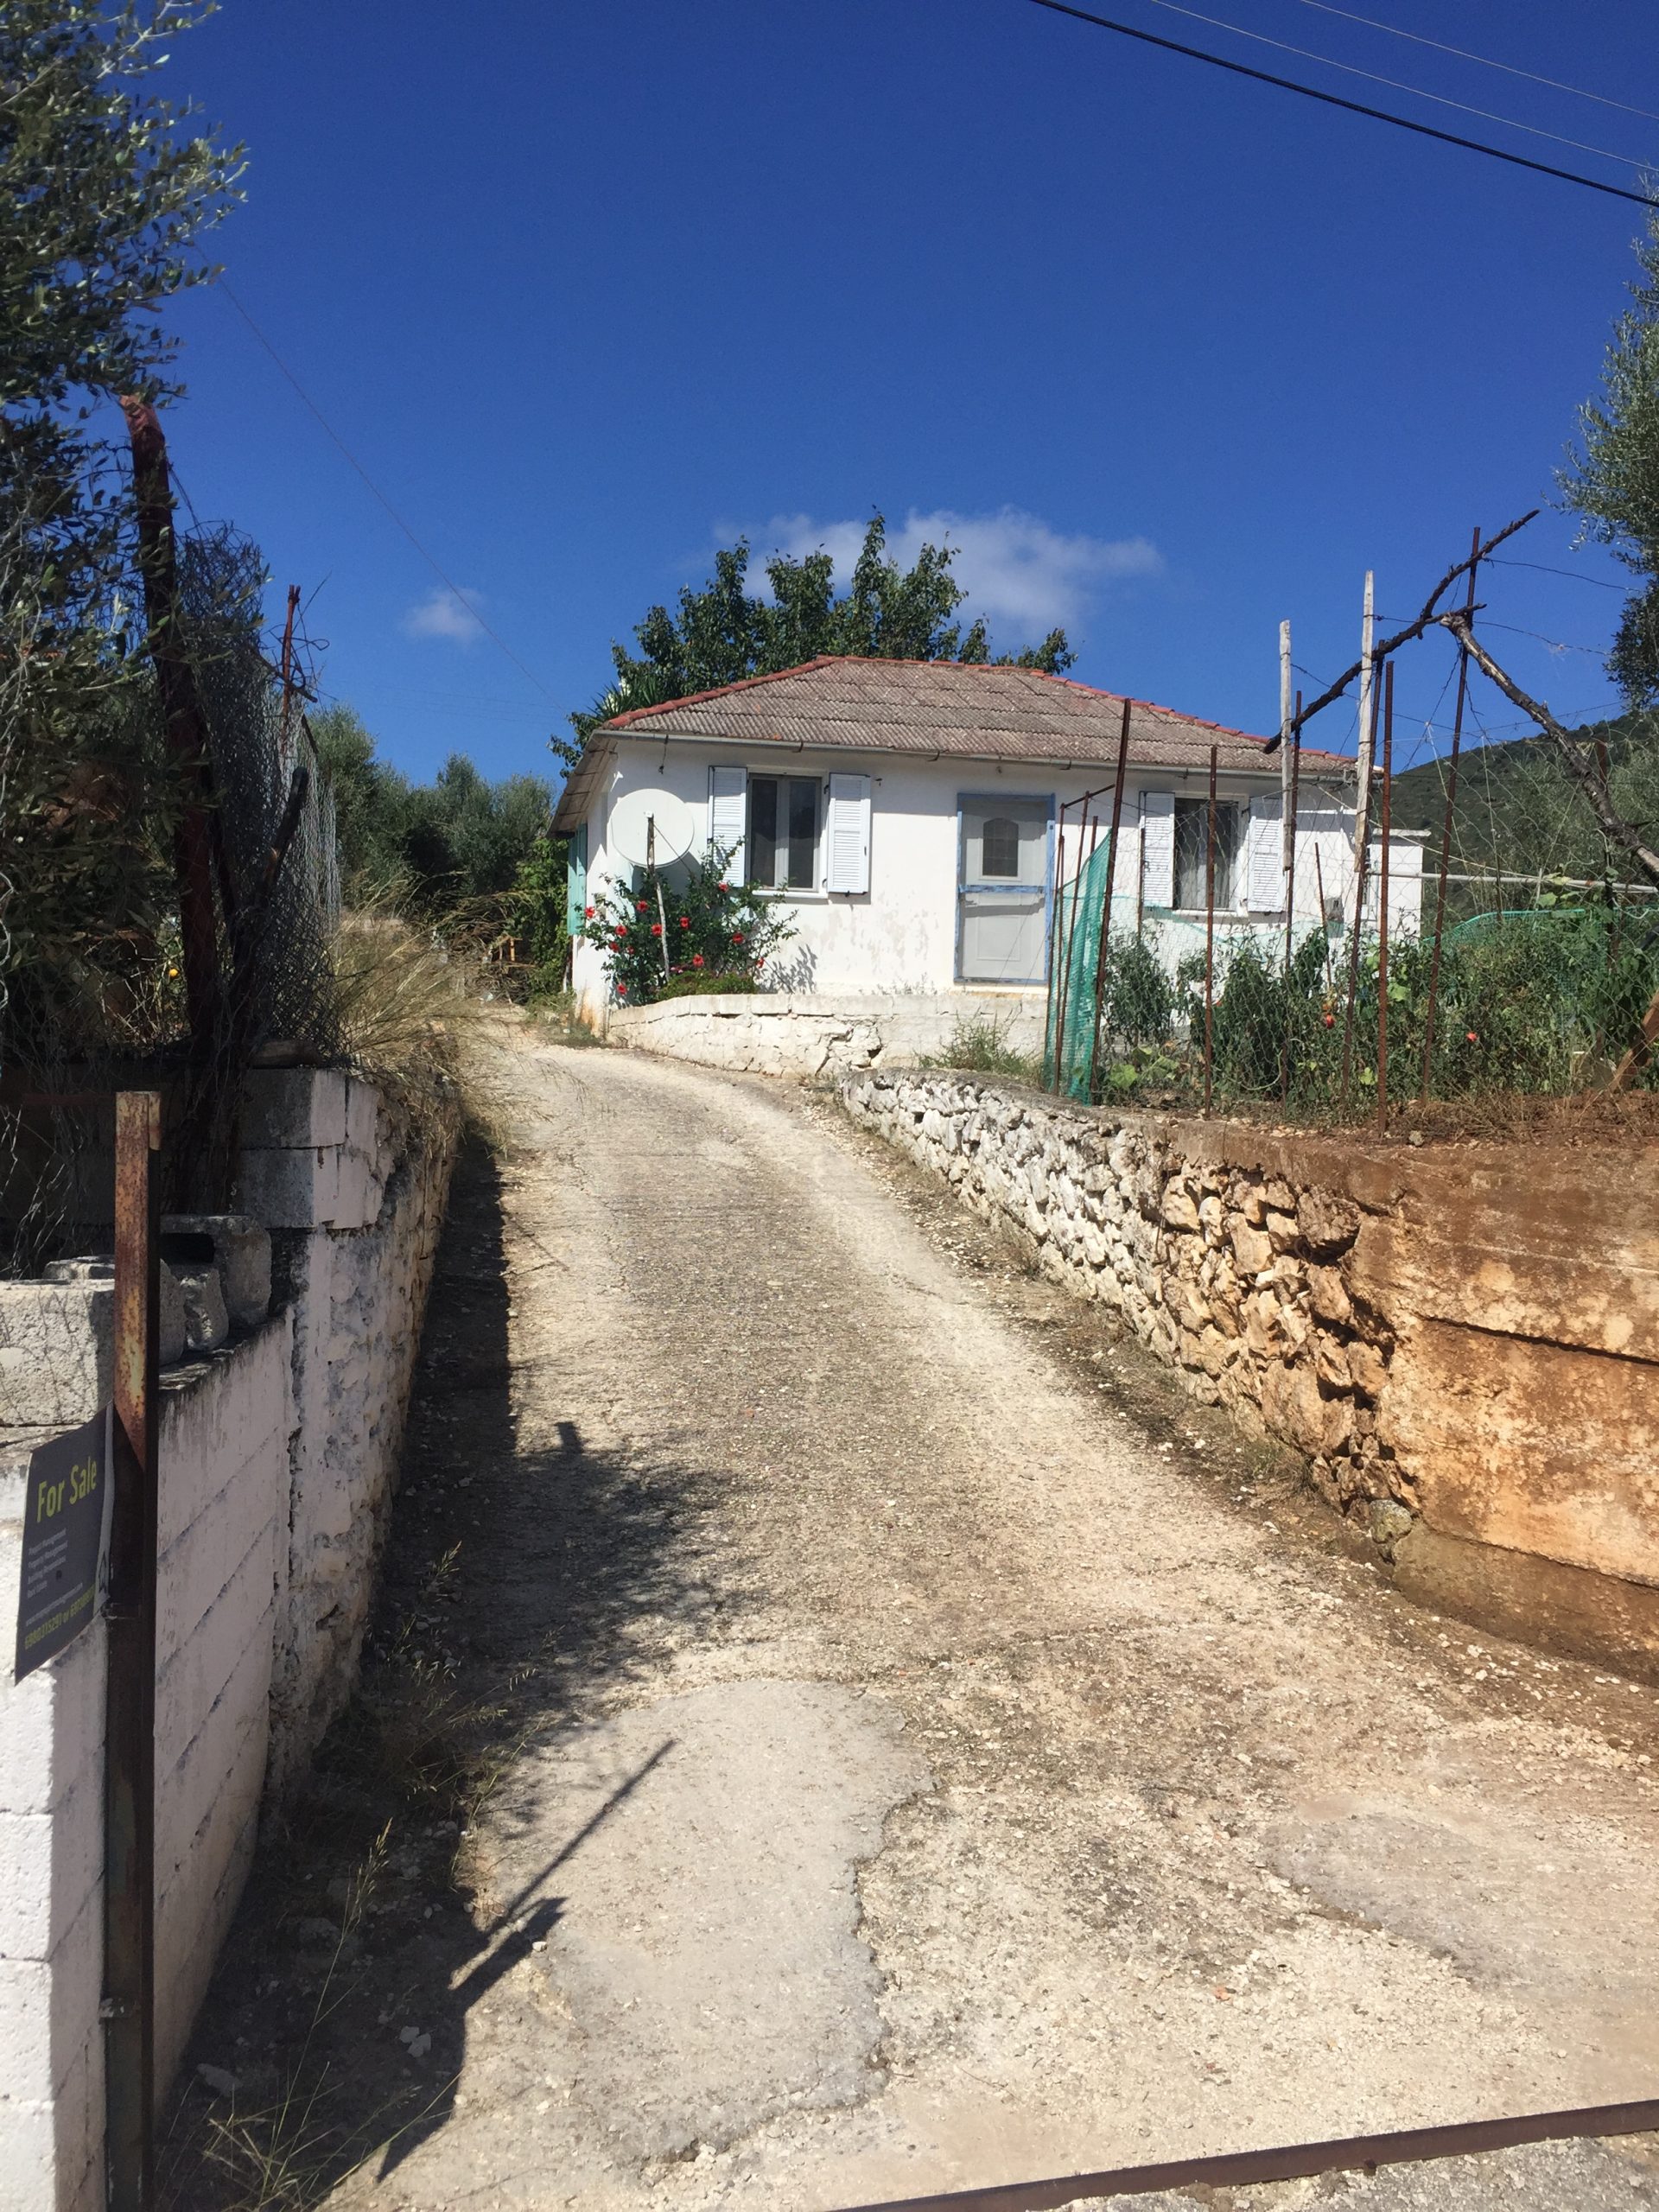 Σπίτι πουλήθηκε σχετικά με την Ιθακωβά Ελλάδα, MV ακίνητα